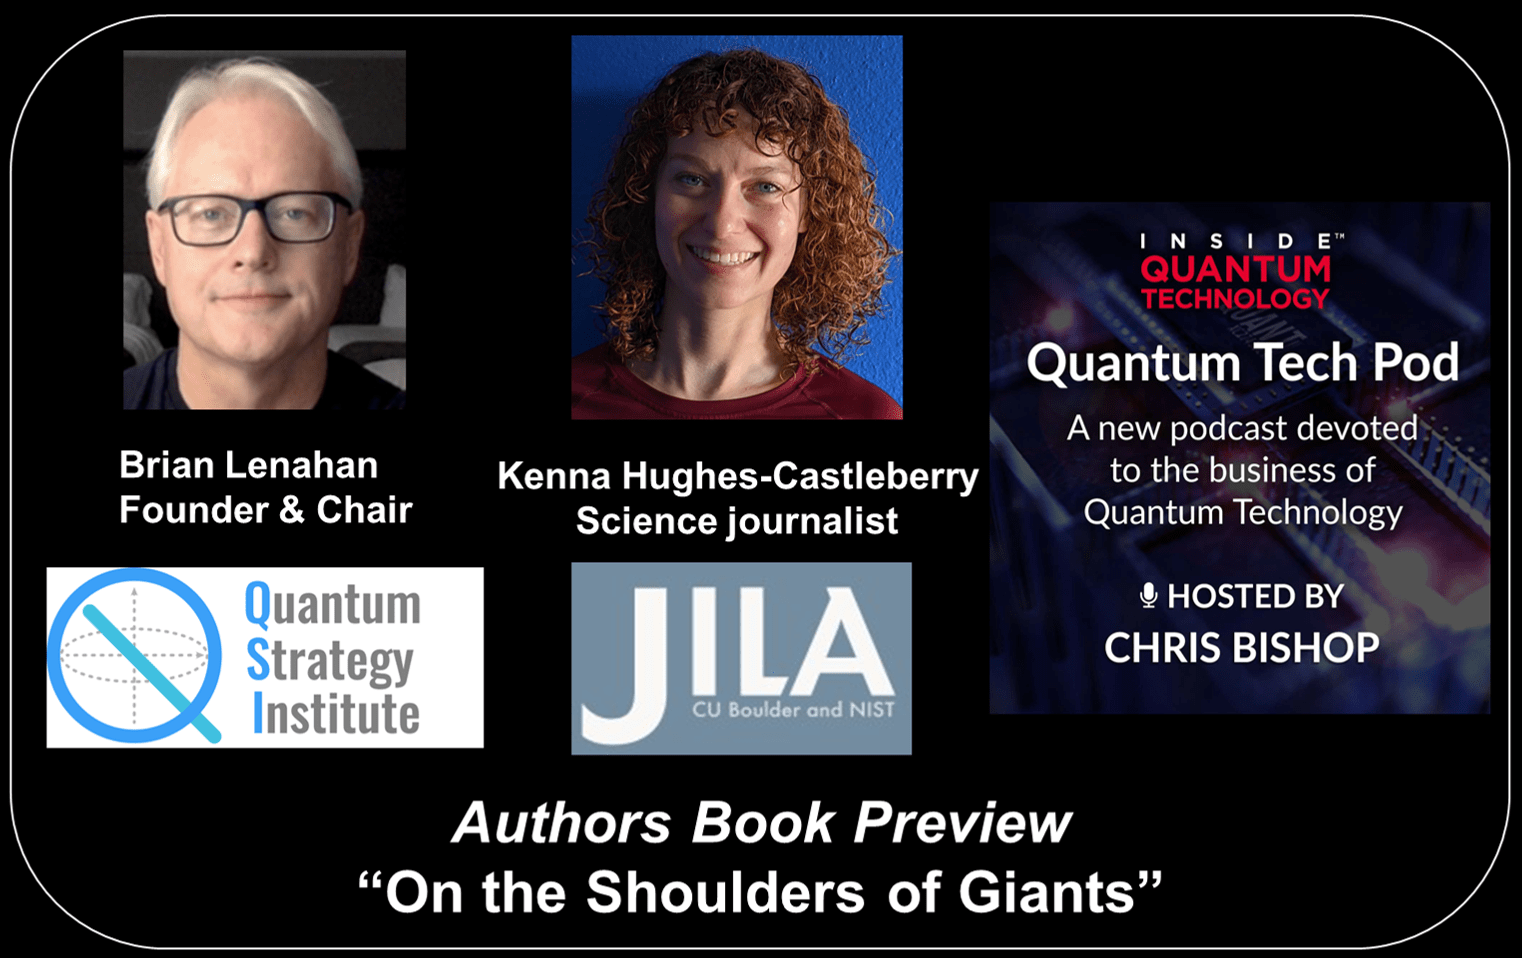 क्वांटम टेक पॉड एपिसोड 47: ब्रायन लेनाहन और केना ह्यूजेस-कैसलबेरी ने अपनी पुस्तक 'ऑन द शोल्डर्स ऑफ जायंट्स' पर चर्चा की